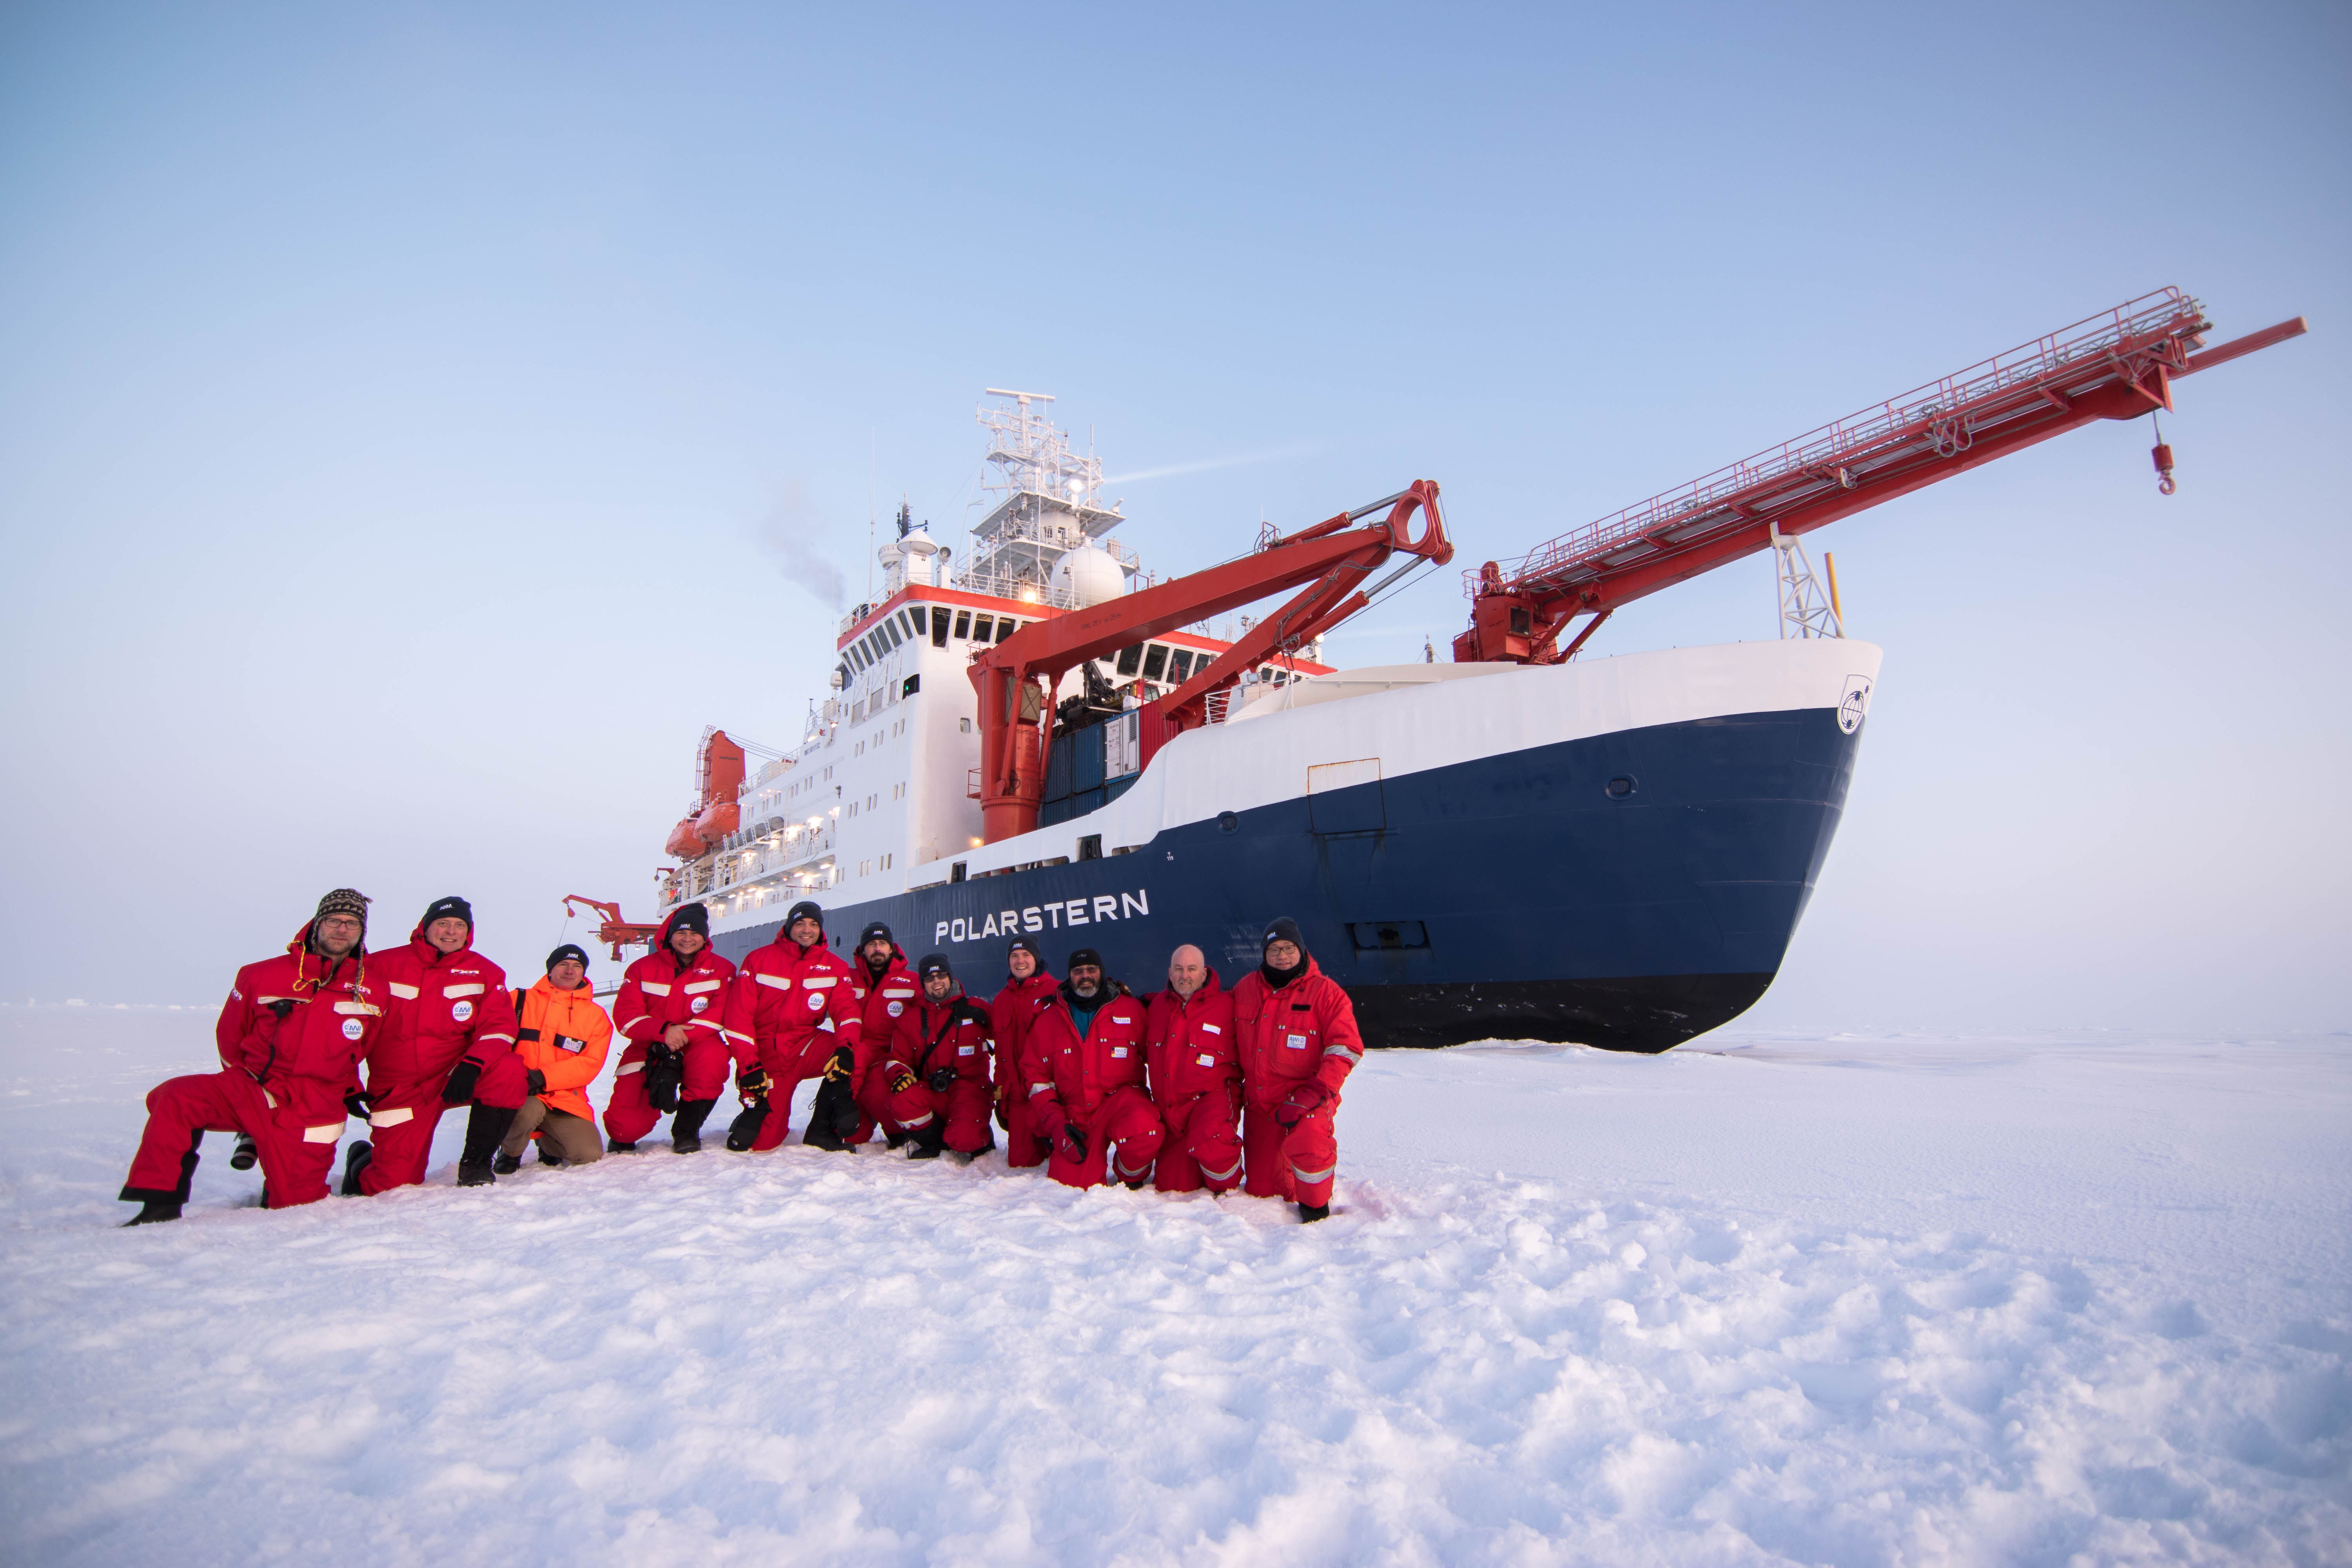 MOSAiC first team reaches Artic ice floe